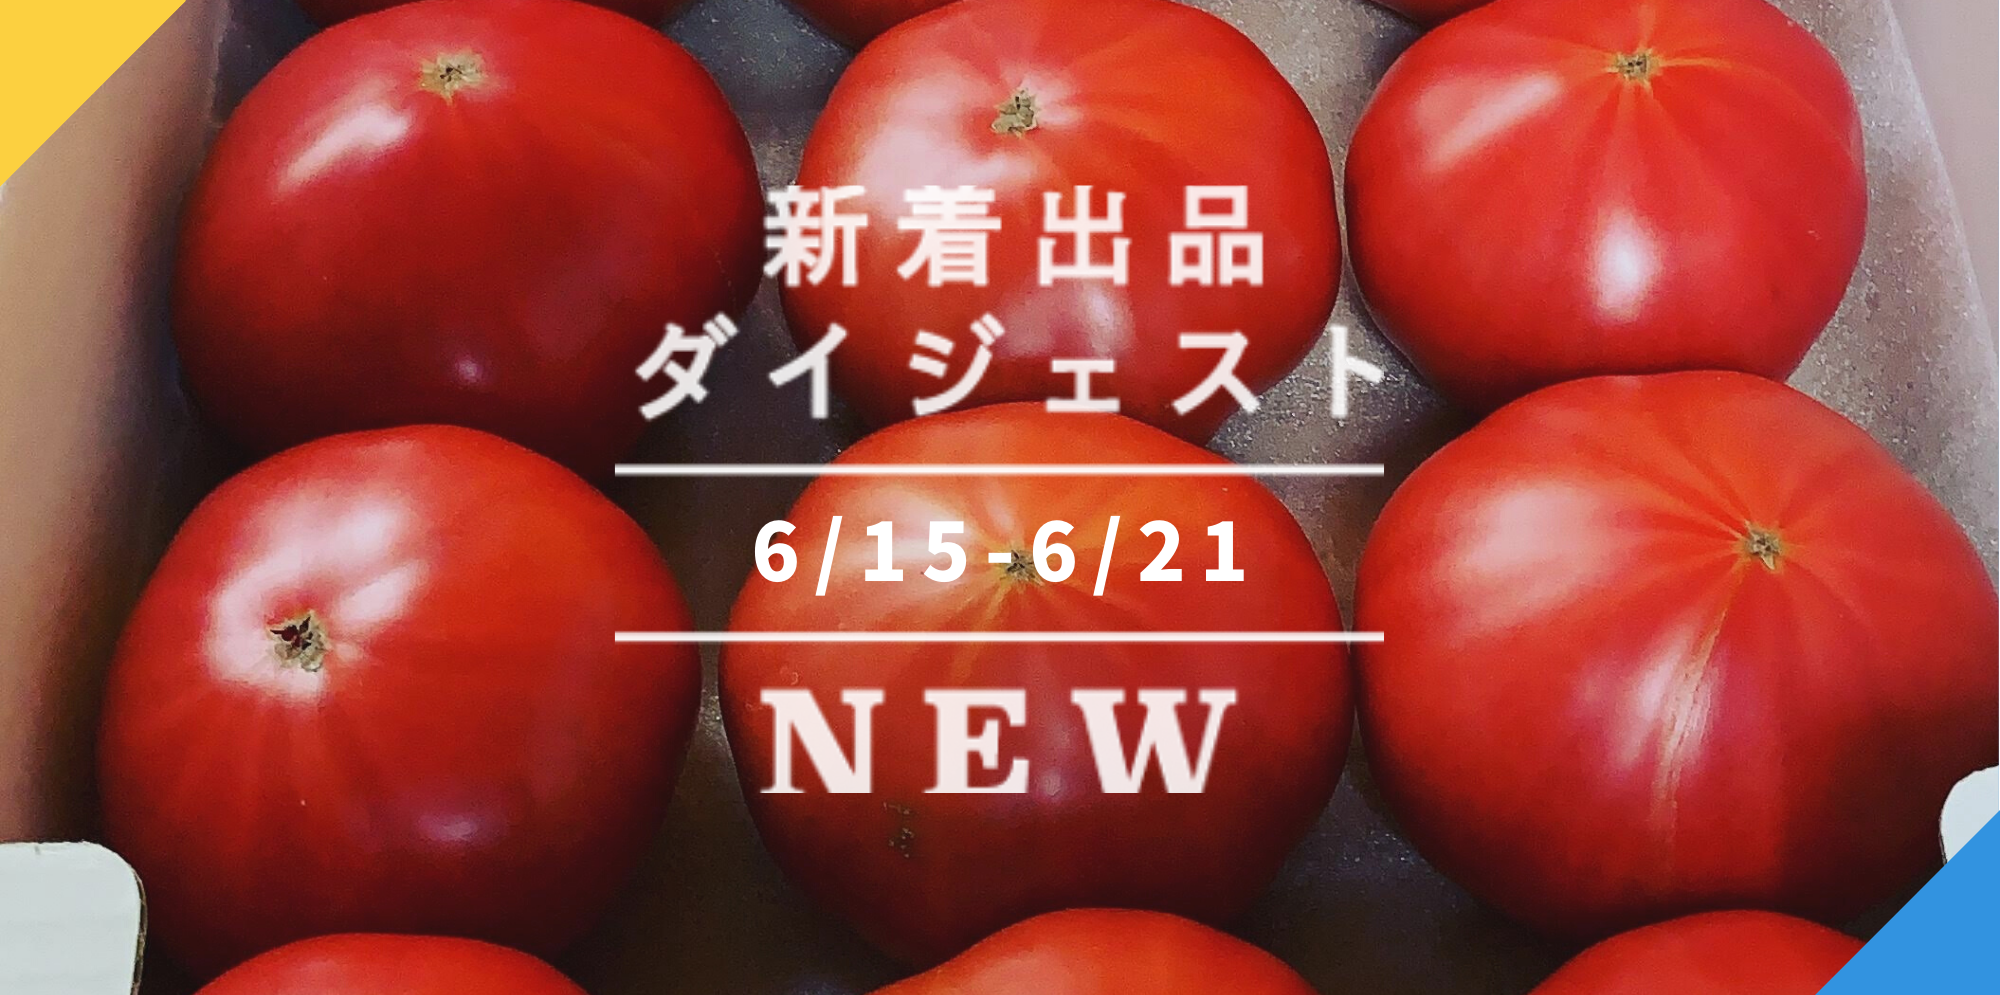 離島は別料金になります熊本、阿蘇の美味しいミニトマト  連絡、注文ページ